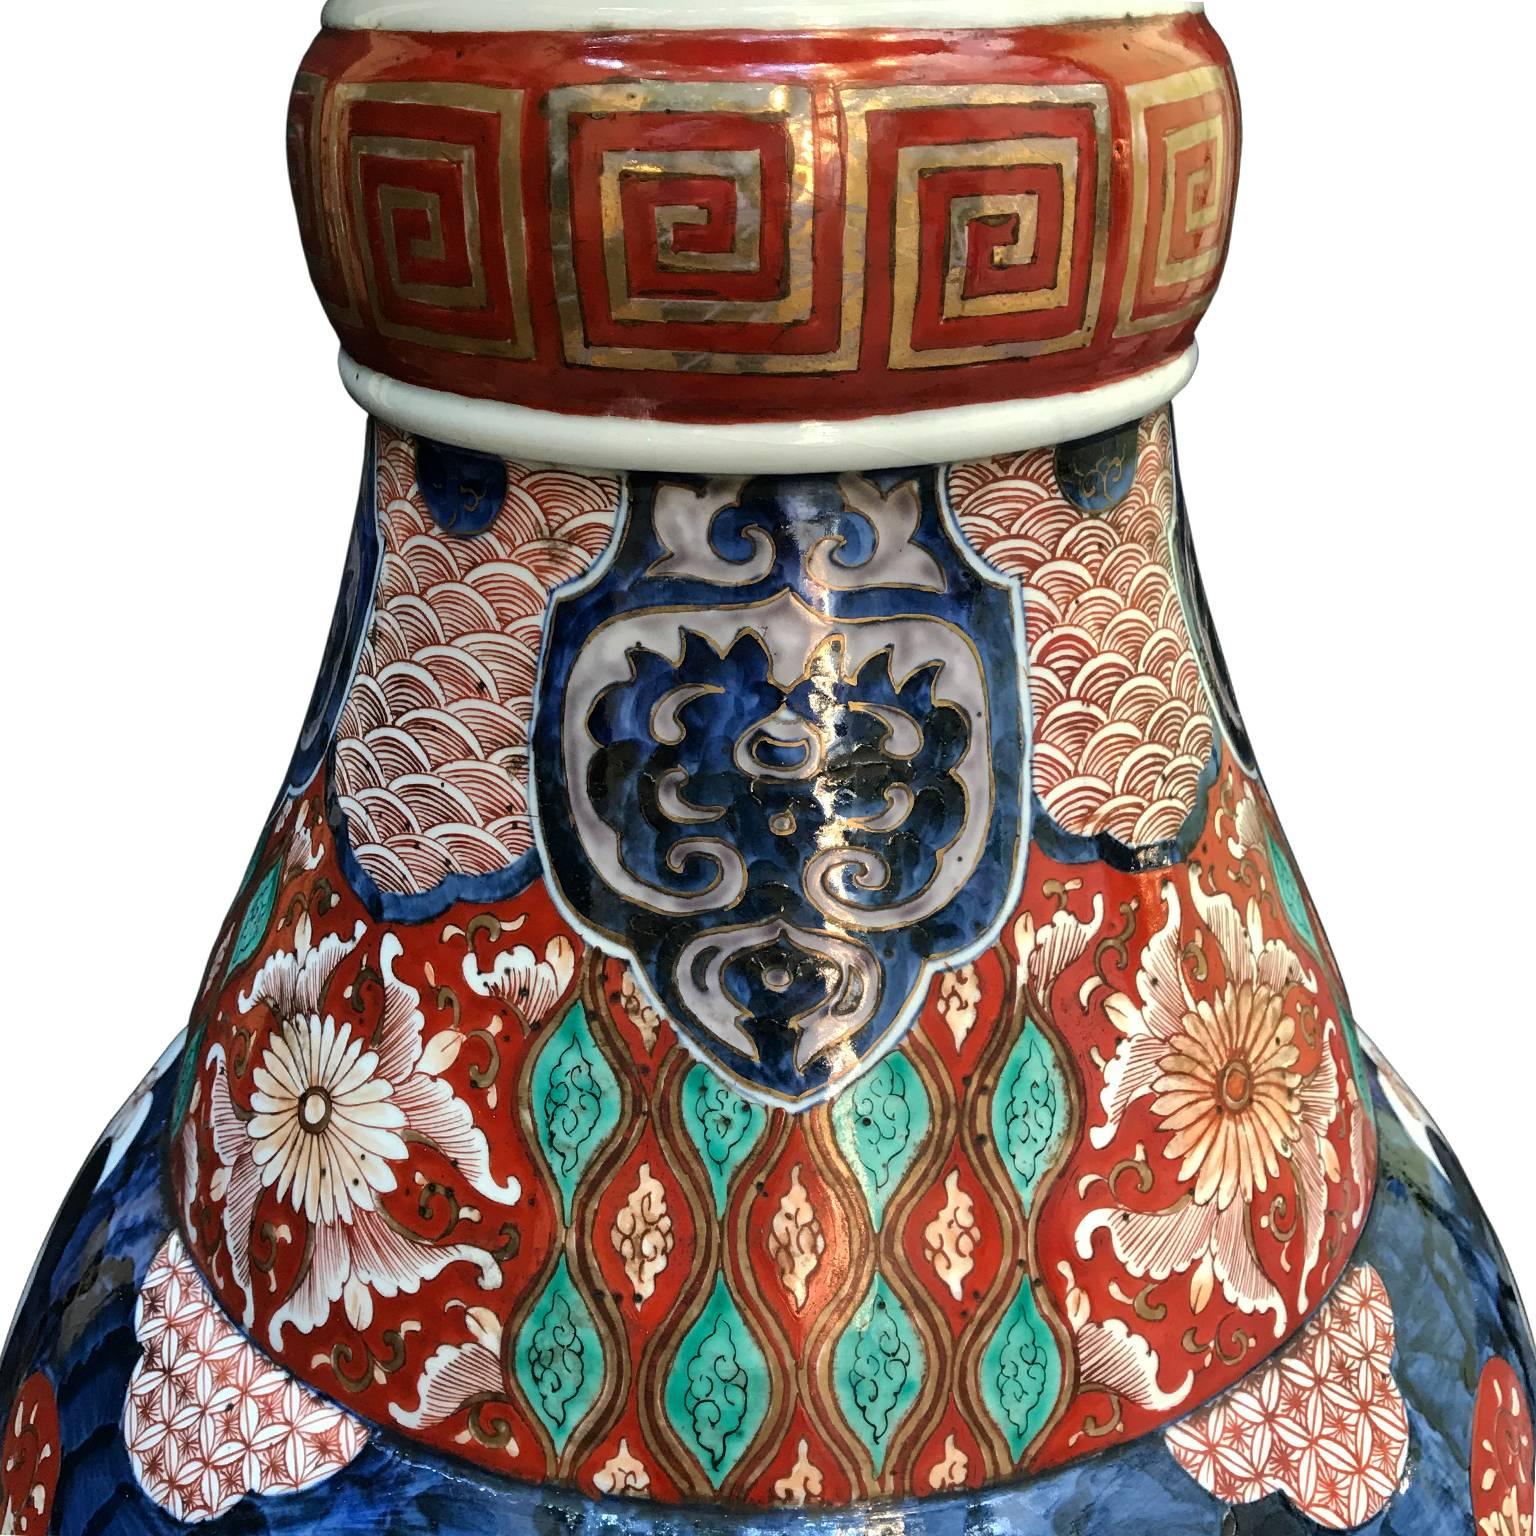 Pair of Large Imari Vases 19th Century Japanese Blue Red White Porcelain Vases 9